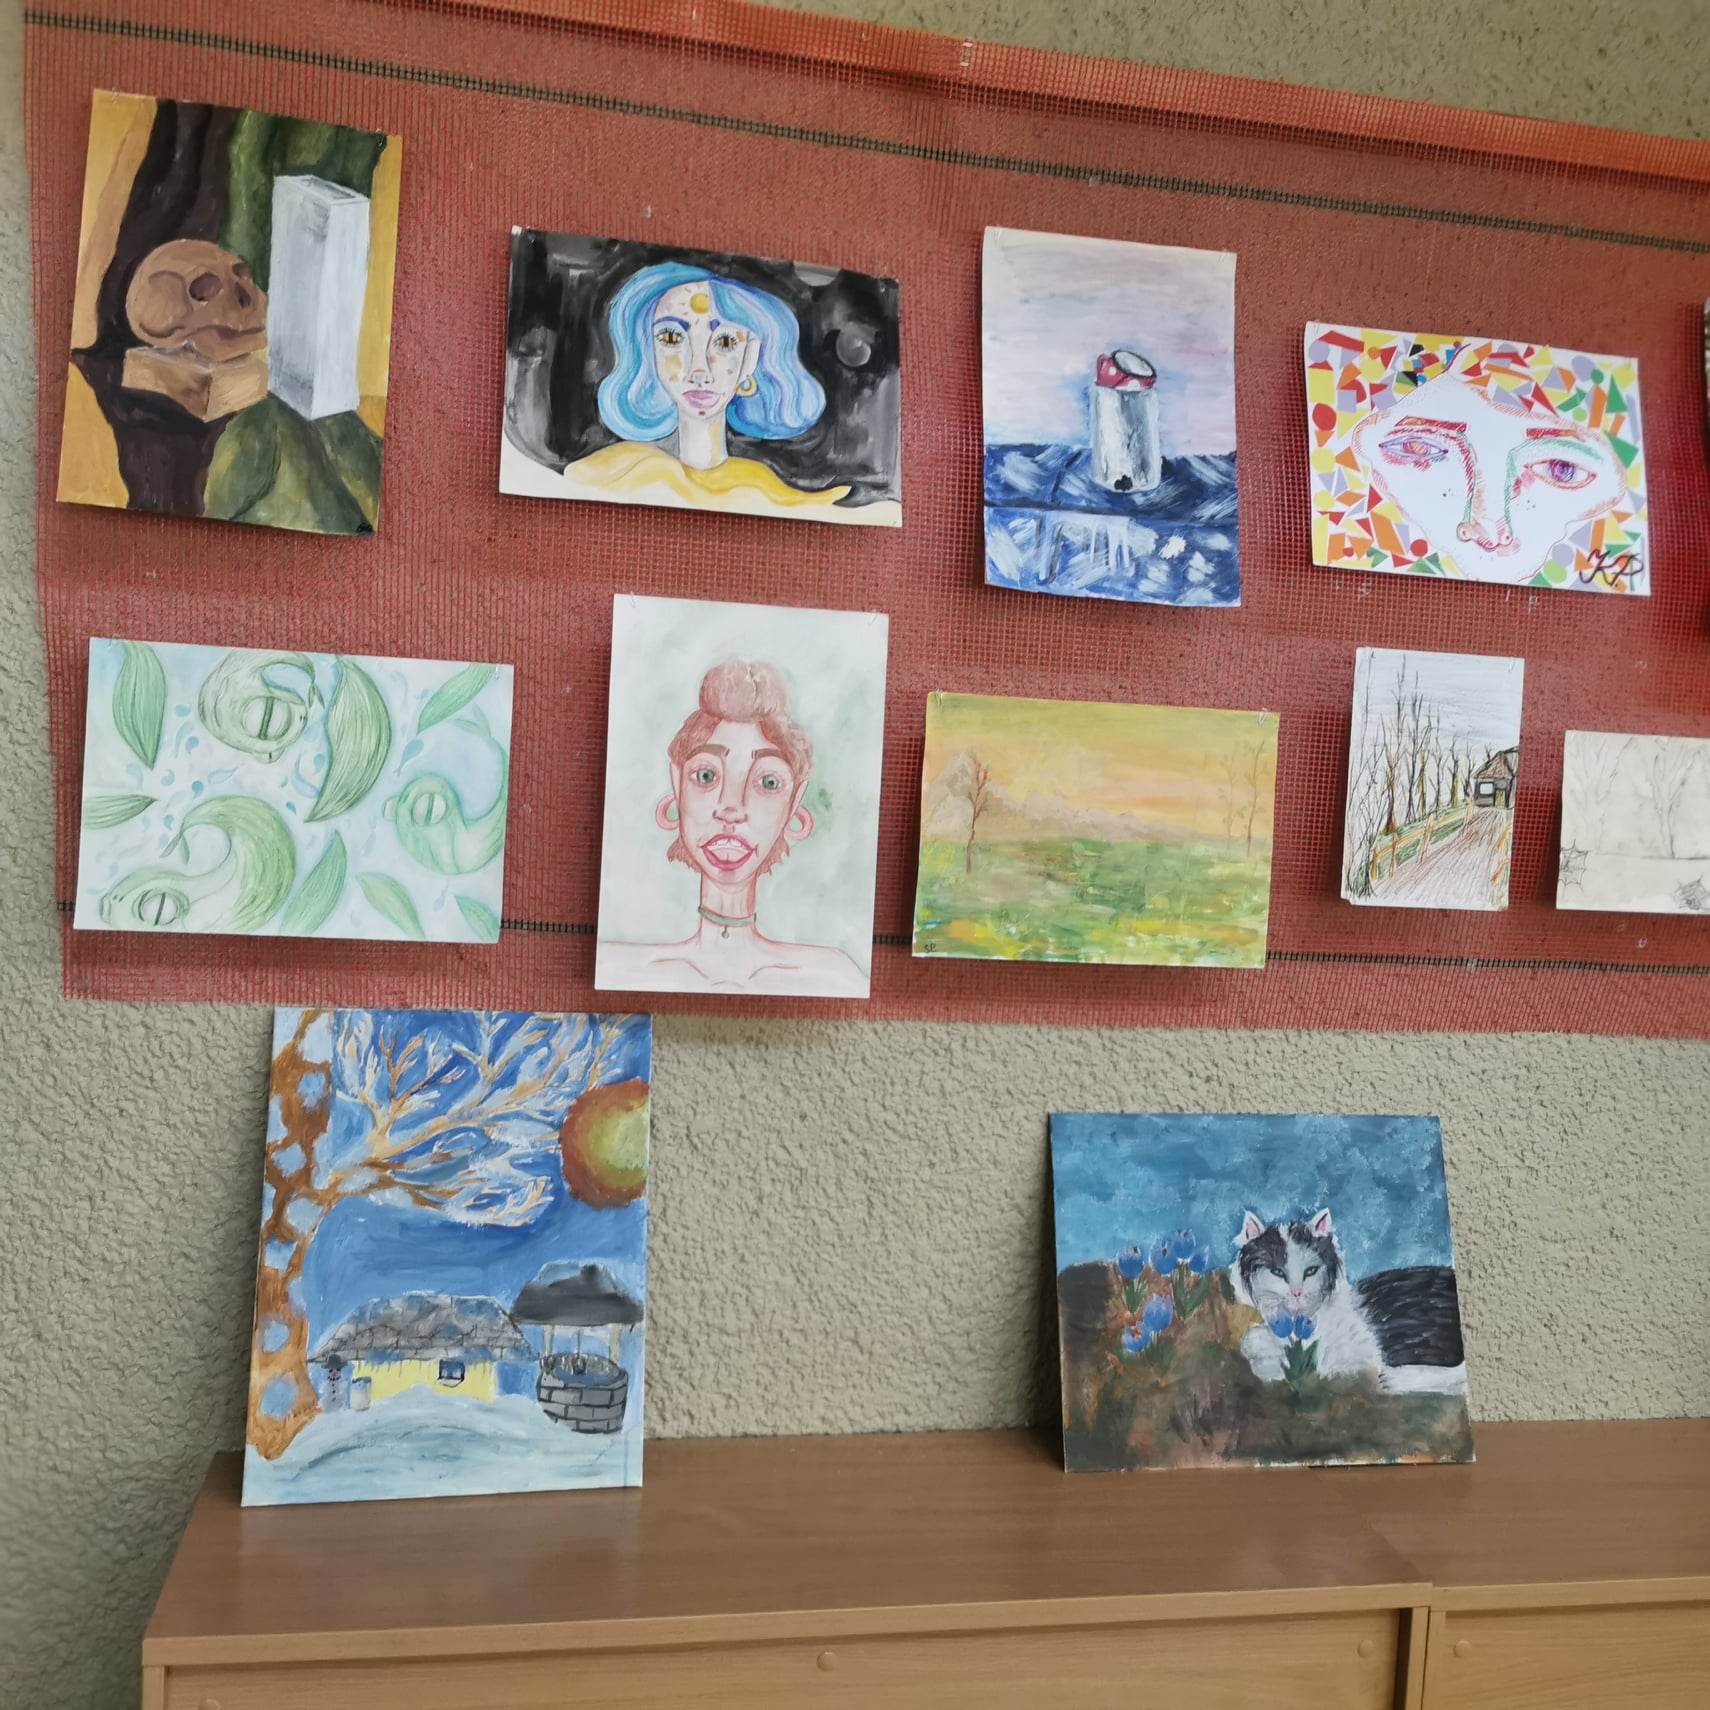 Keliaujanti globojamų vaikų piešinių/rankdarbių paroda „Aš toks kaip ir tu, aš ne iš kitos planetos“ pasiekė Butrimonis